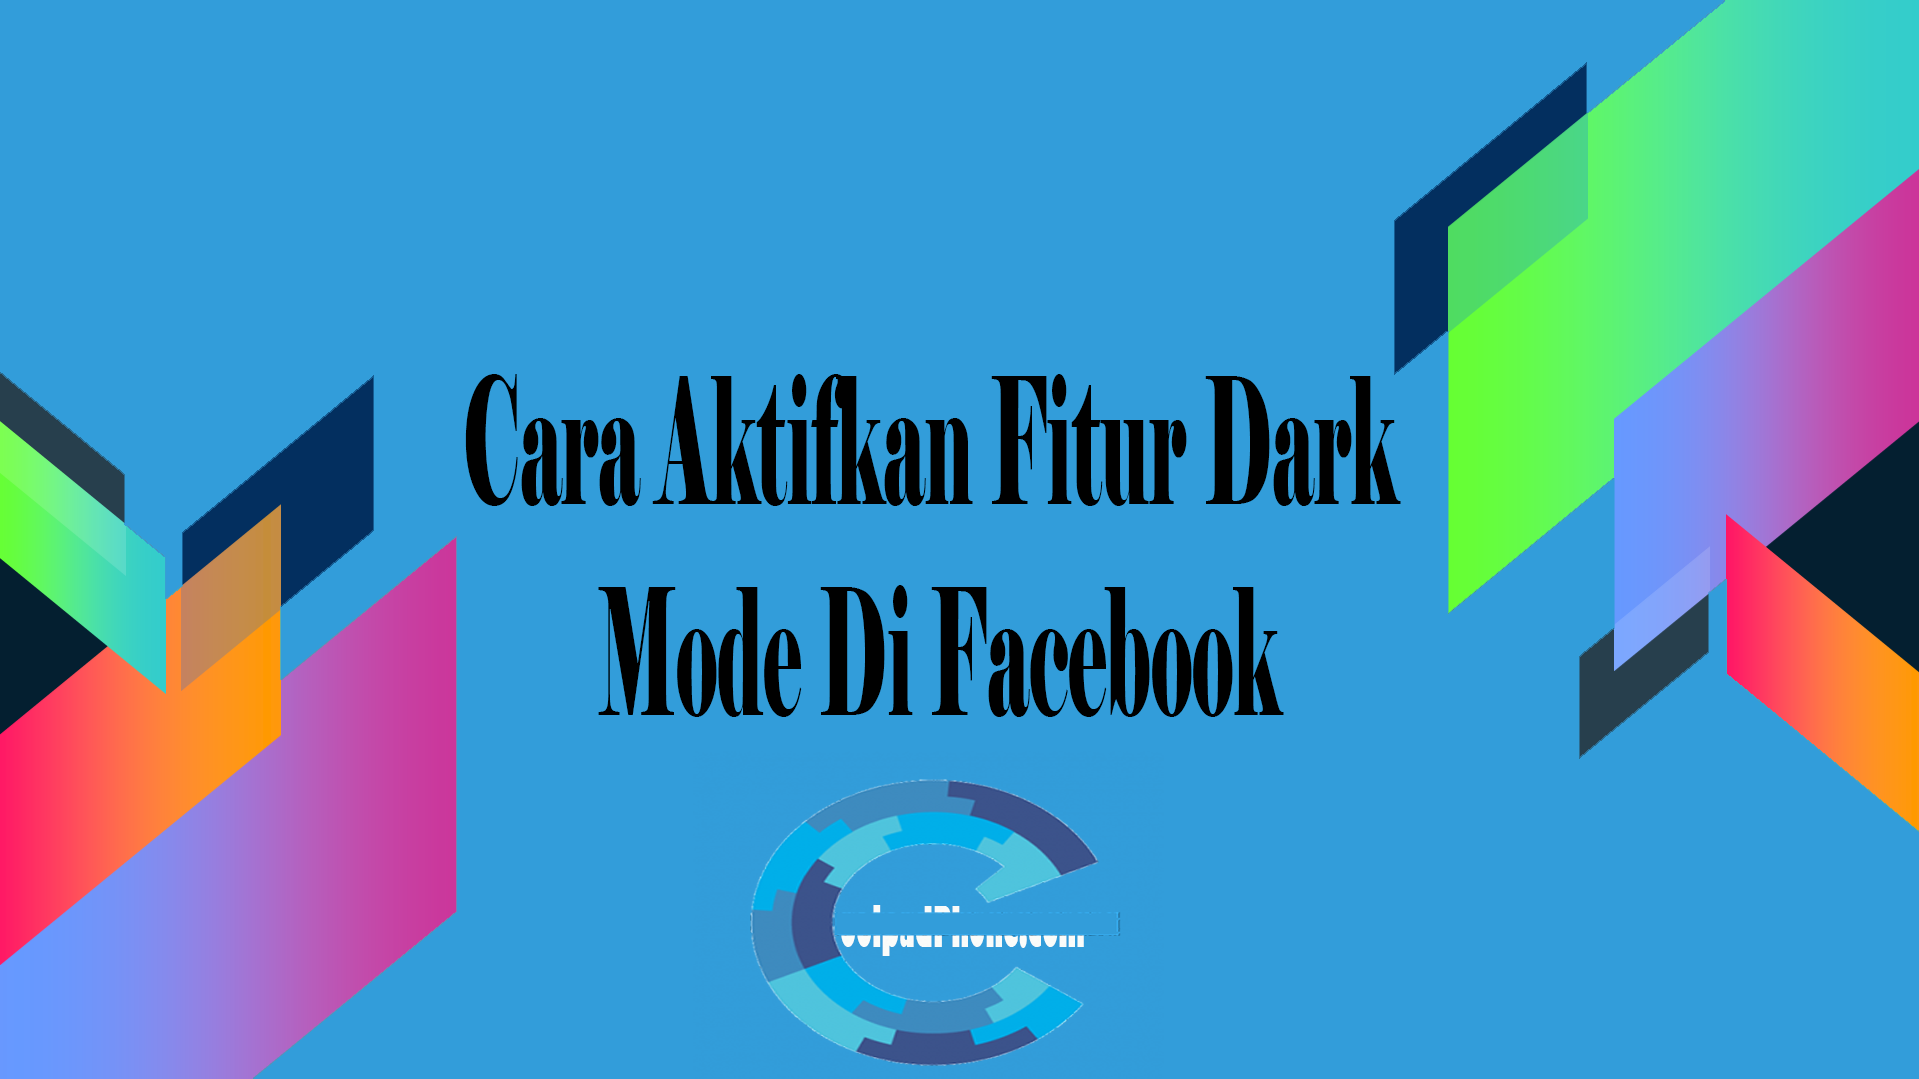 Cara Aktifkan Fitur Dark Mode Di Facebook